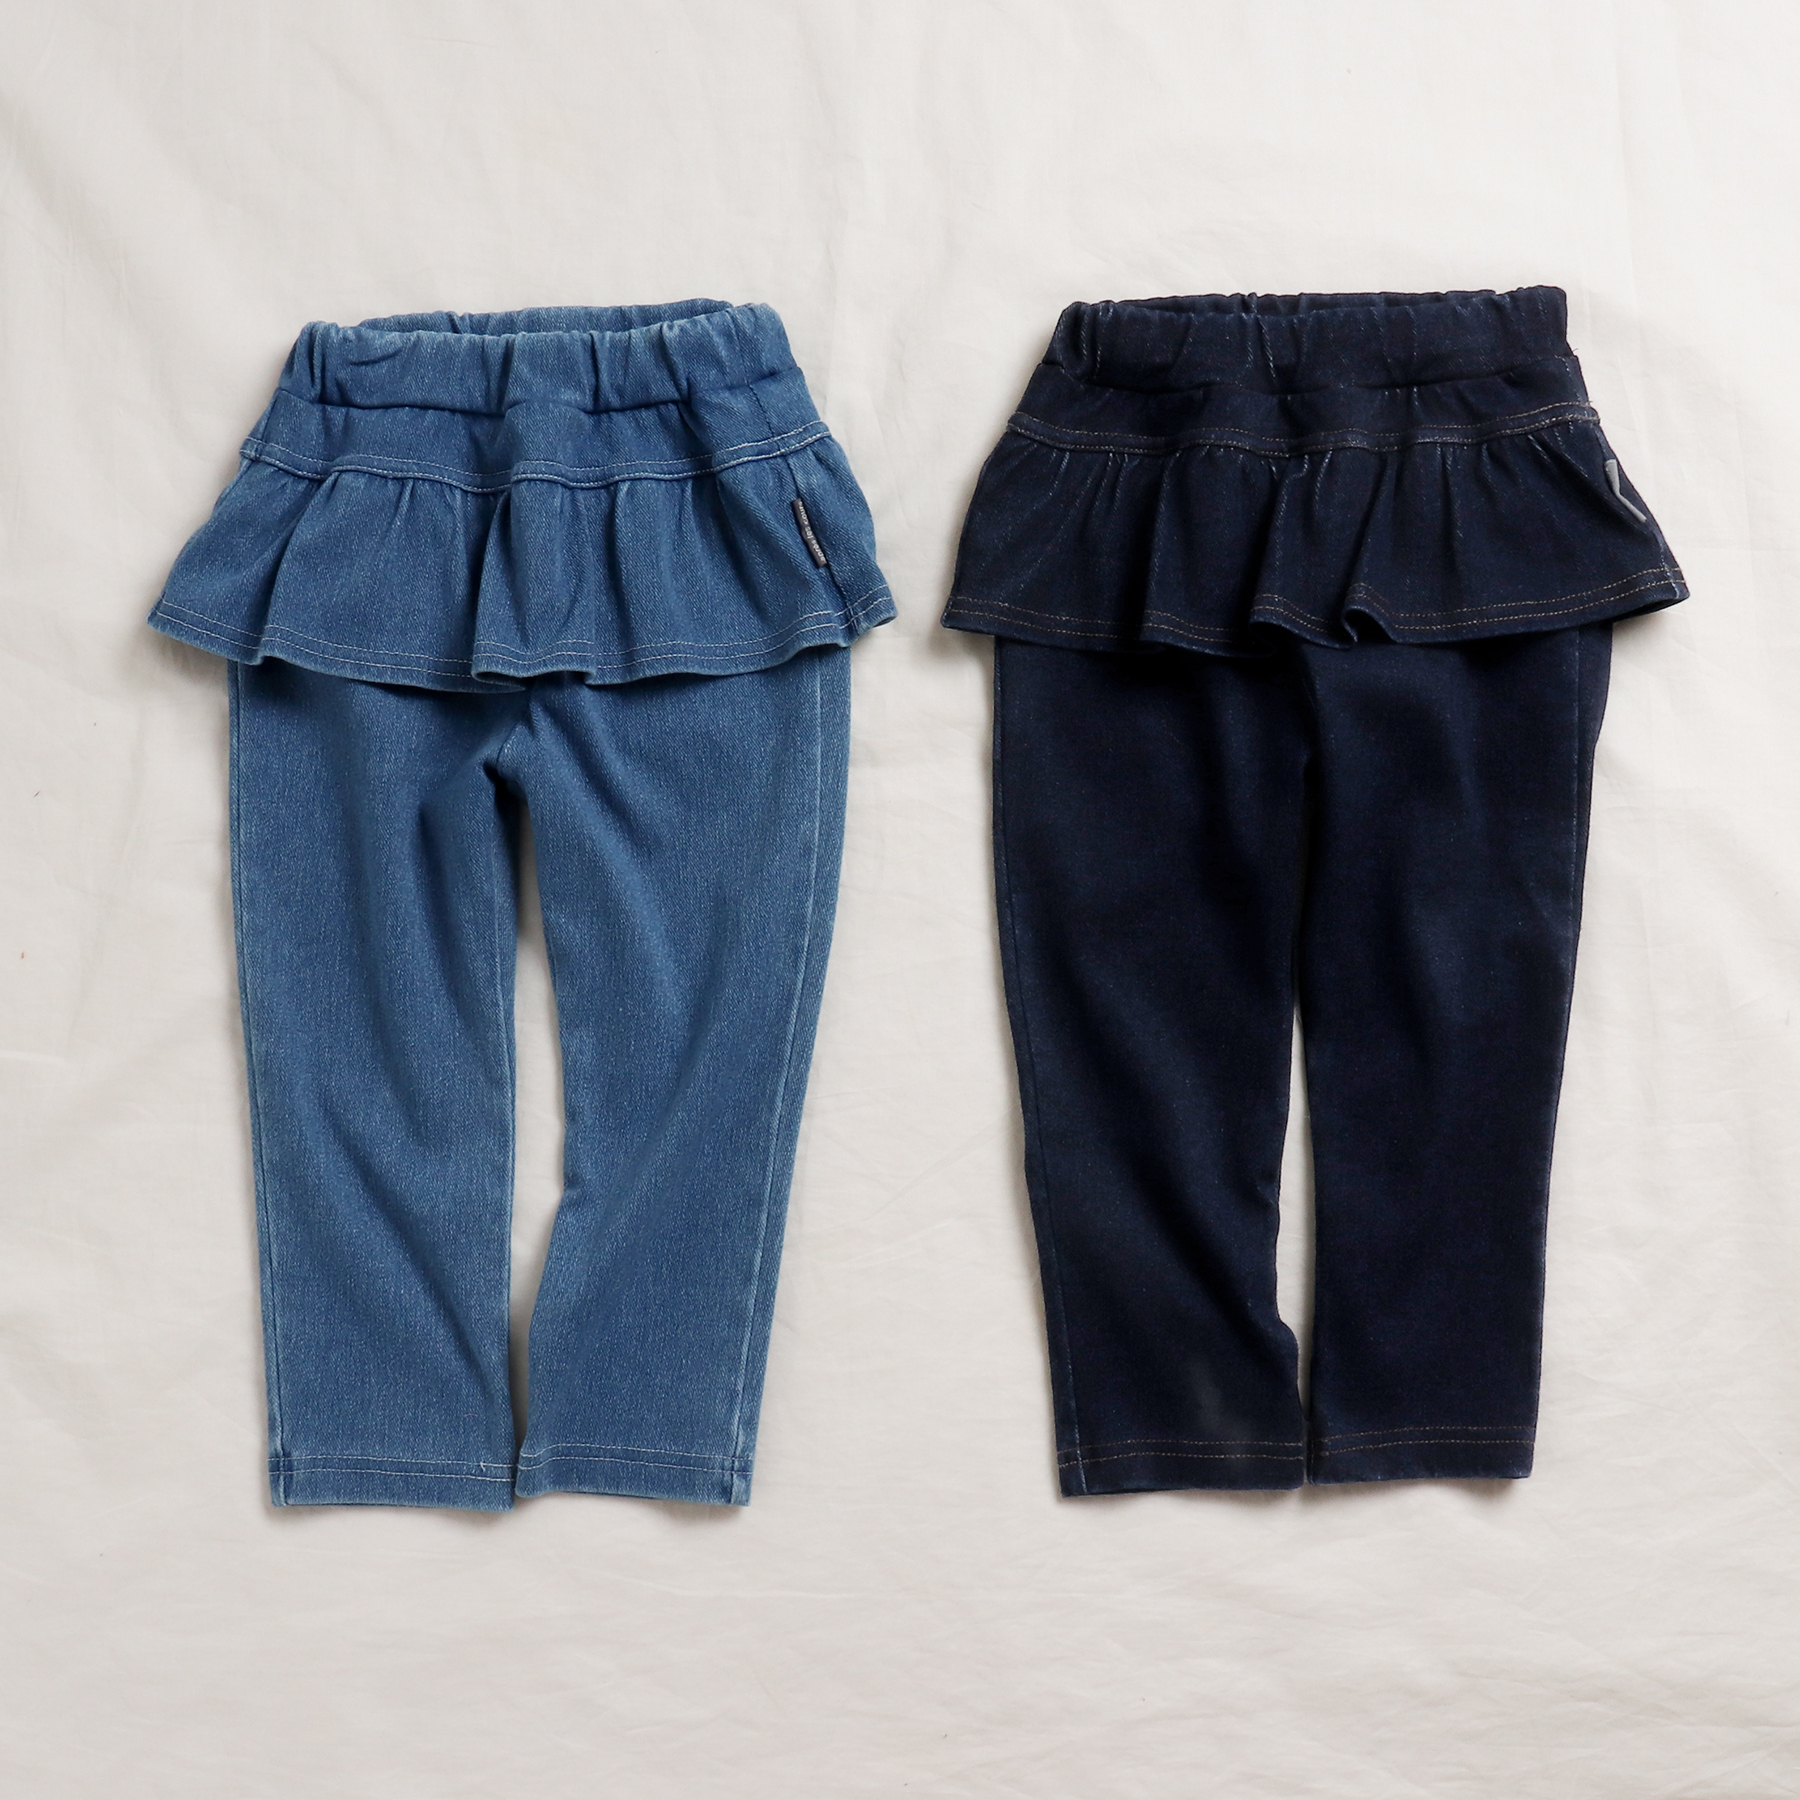 ペプラムデニム/7days Style pants